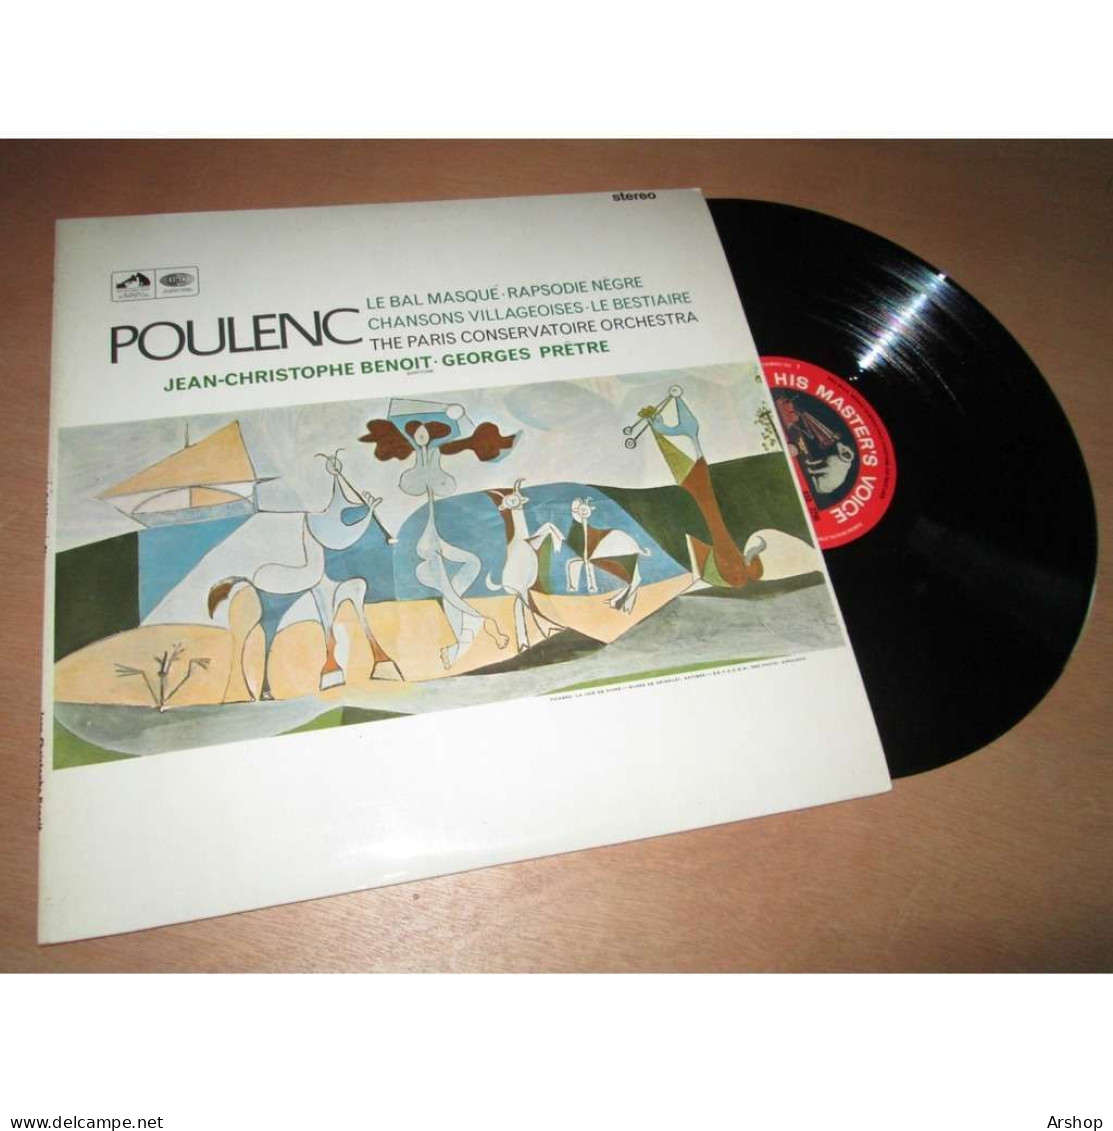 GEORGES PRETRE Le Bal Masqué - Rapsodie Negre - Le Bestiaire & POULENC - His Master Voice ASD 2296 UK Lp 1966 - Classique